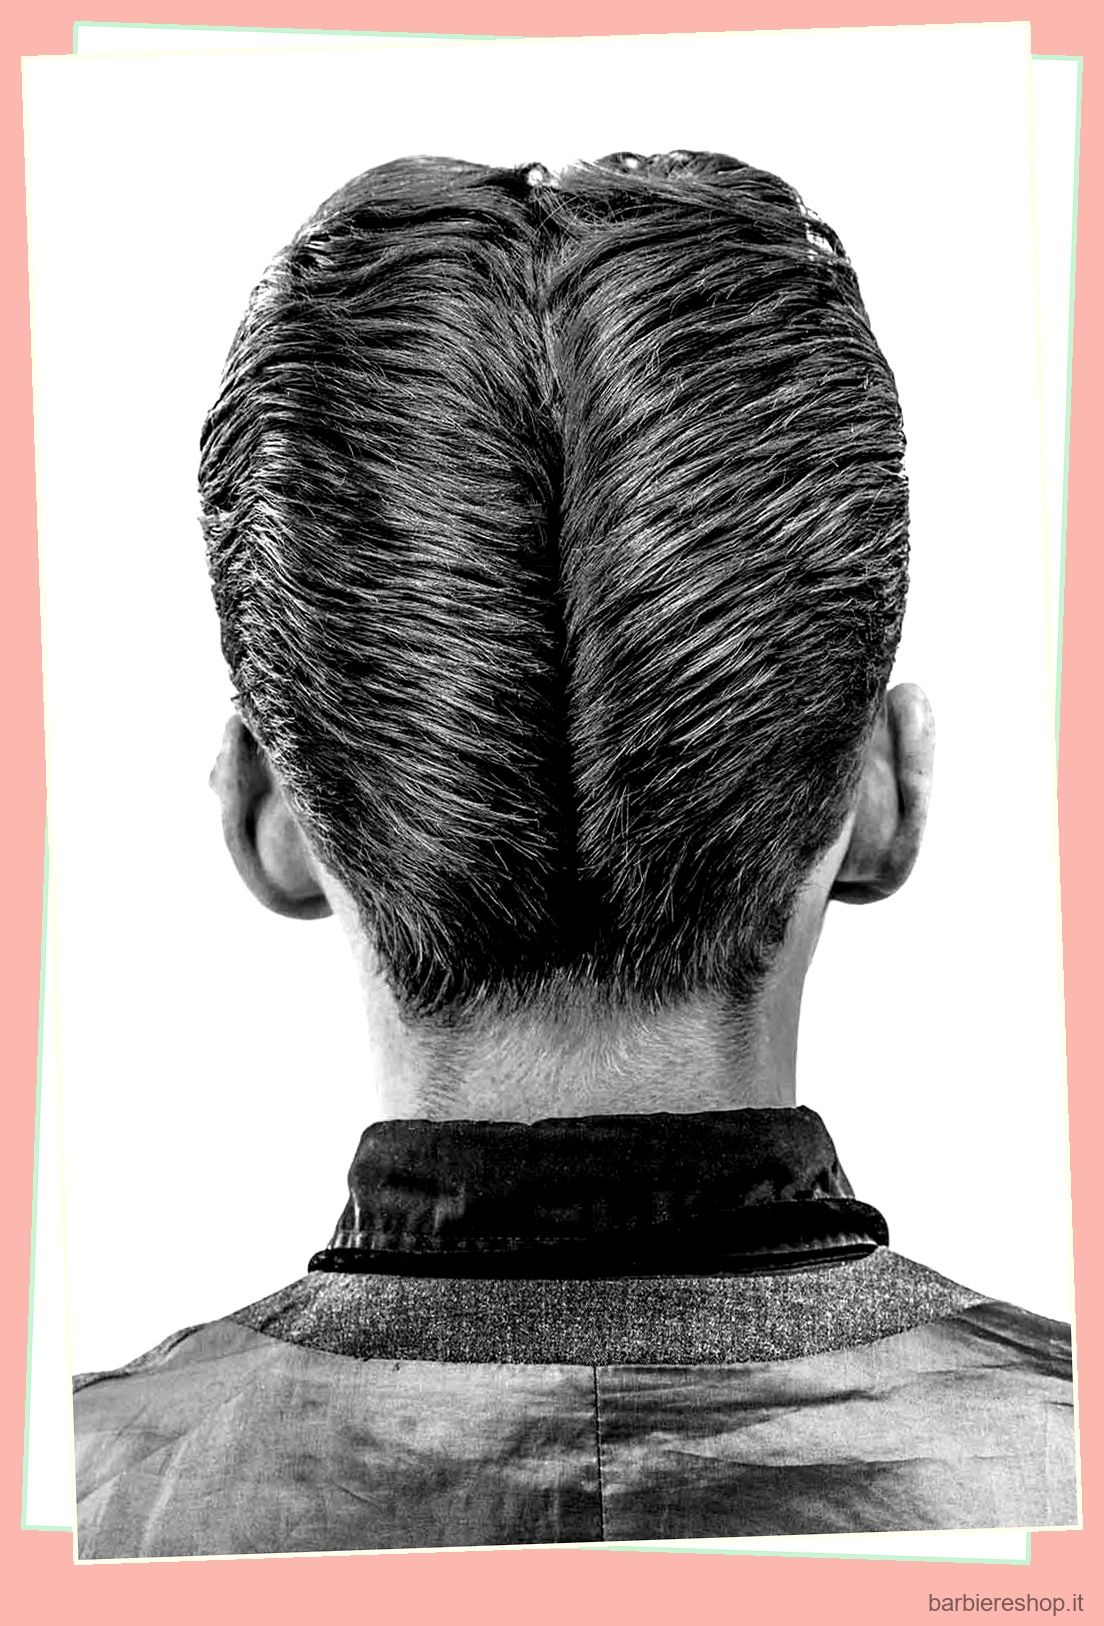 Presentazione dei capelli lisci all'indietro: come sceglierli, acconciarli e mantenerli 52